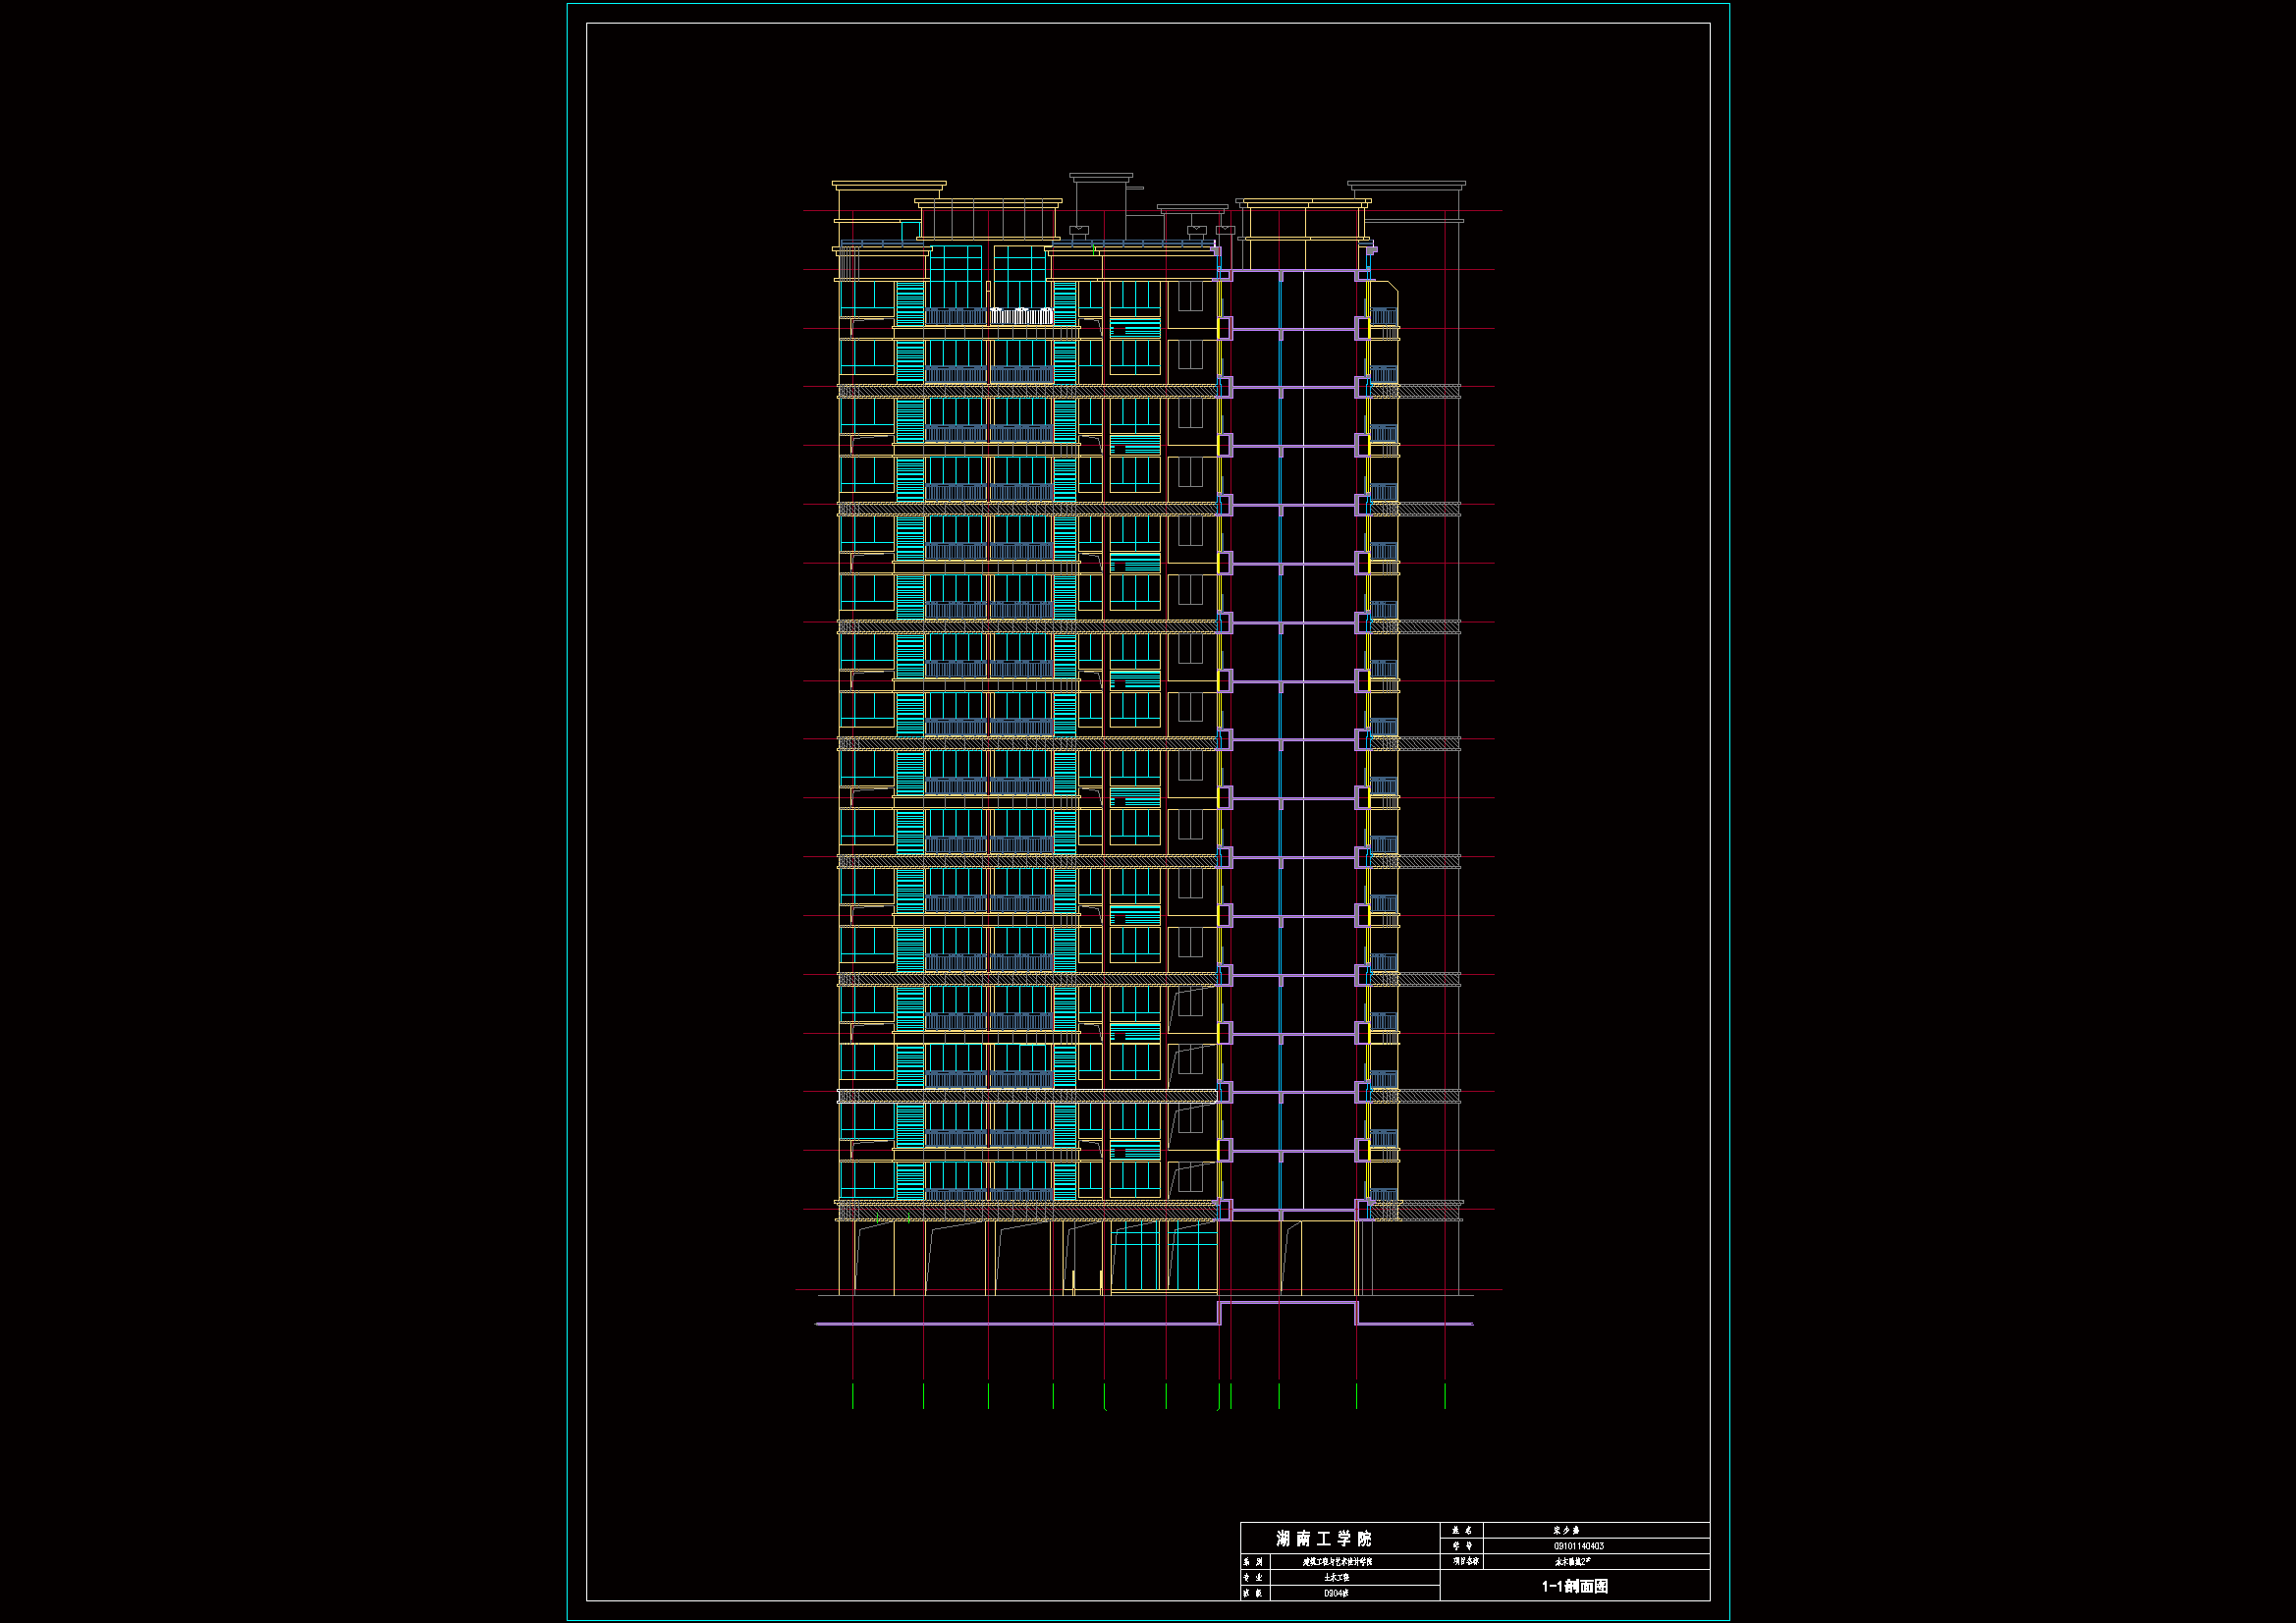 【18层】21557㎡18层住宅楼土建工程量清单（含施组、部分建筑结构图、施工平面、进度表）.rar